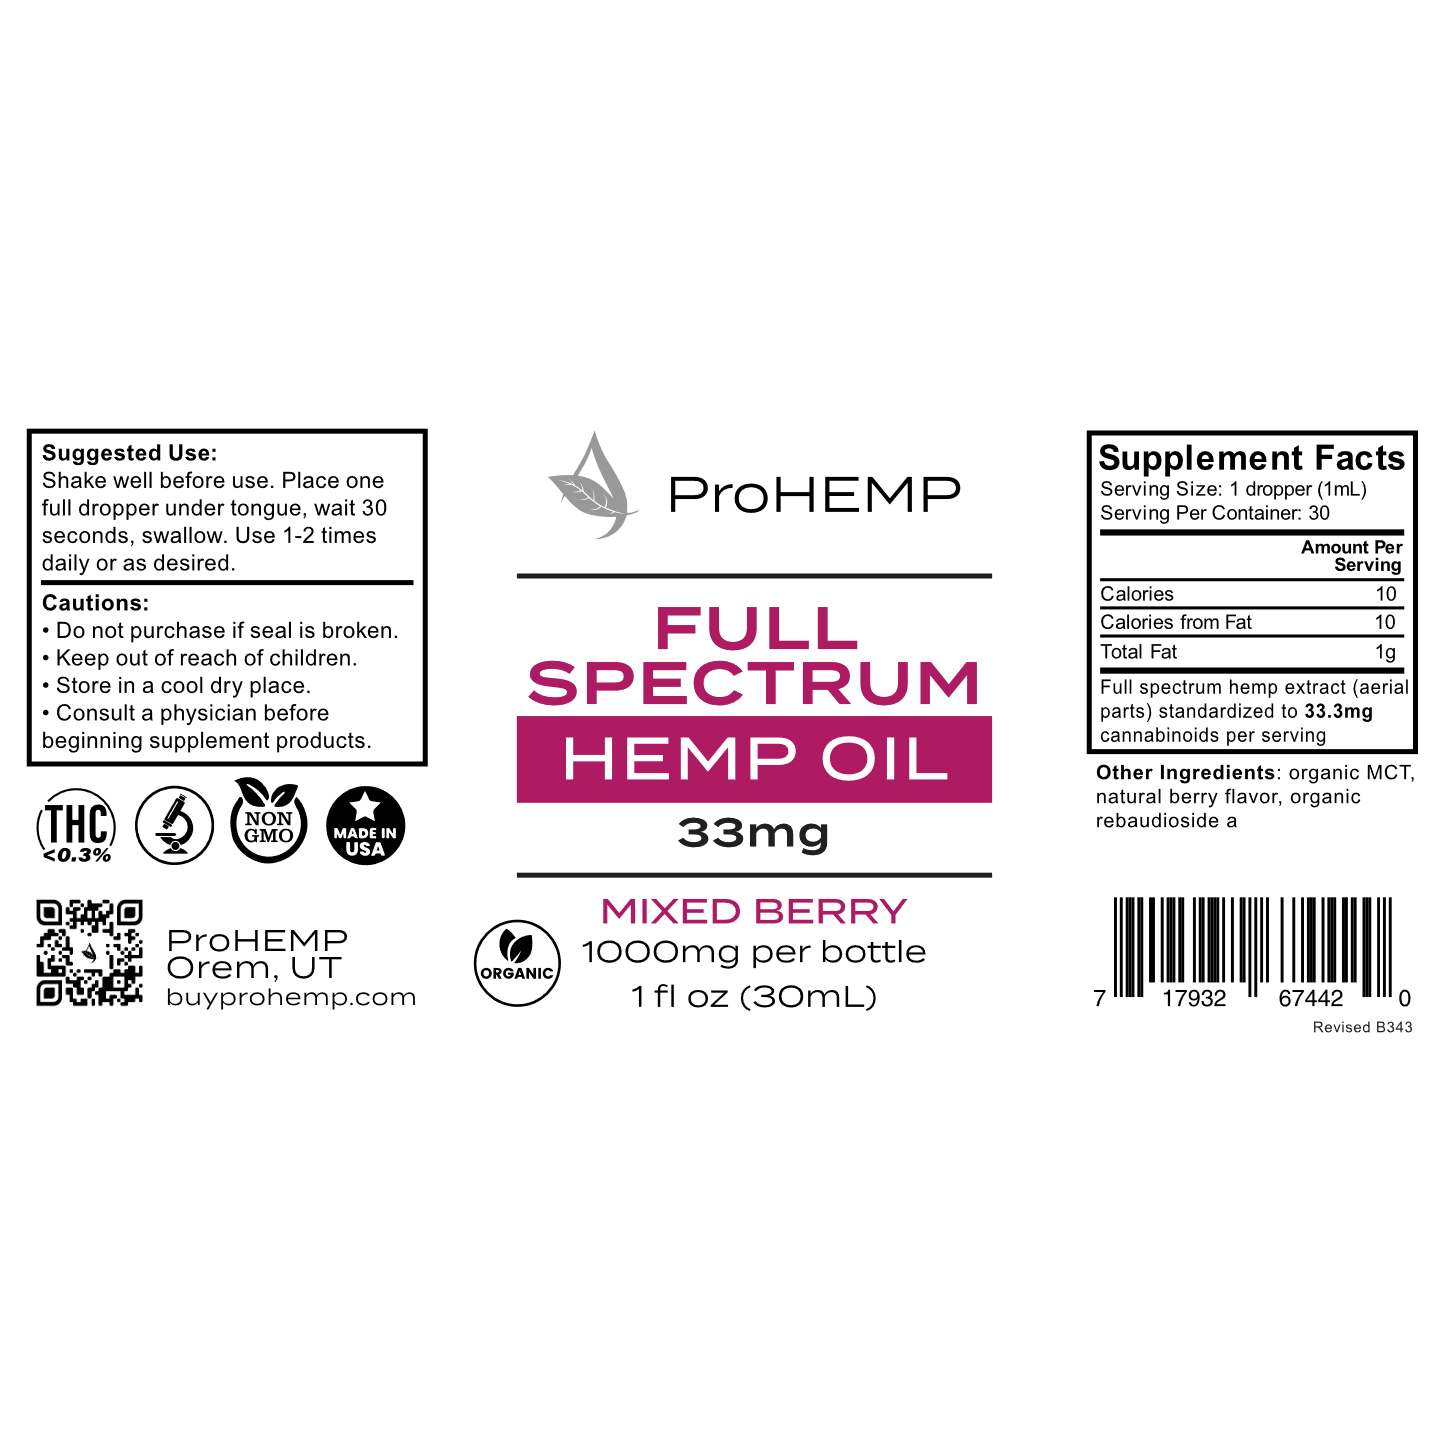 Full Spectrum Hemp Extract - Mixed Berry